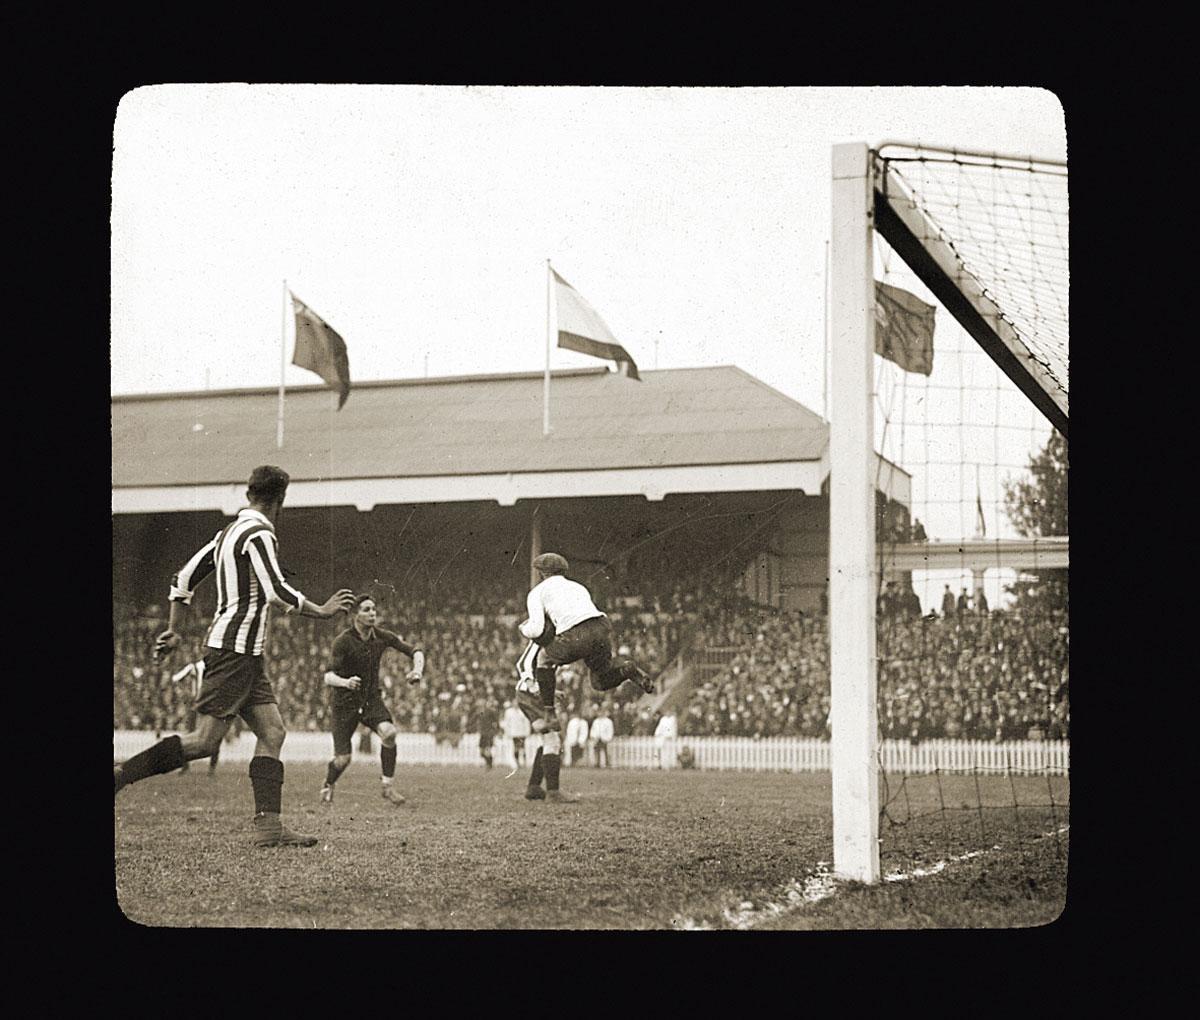 Wedstrijdbeeld uit de finale tegen Tsjechoslovakije, op het Kiel.